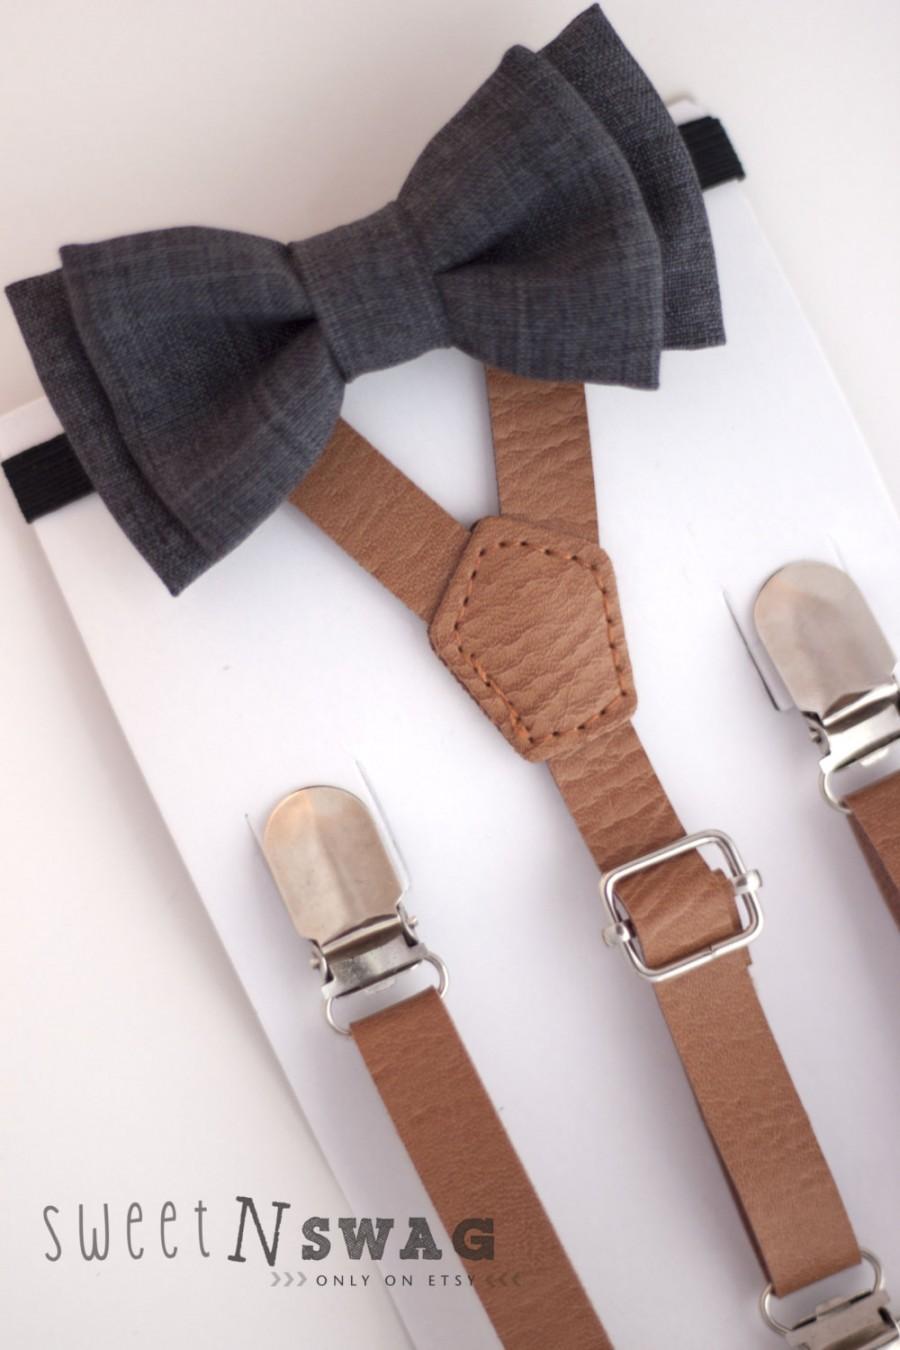 Wedding - SUSPENDER & BOWTIE SET.  Newborn - Adult sizes. Light brown pu leather suspenders. Dark grey chambray bow tie.